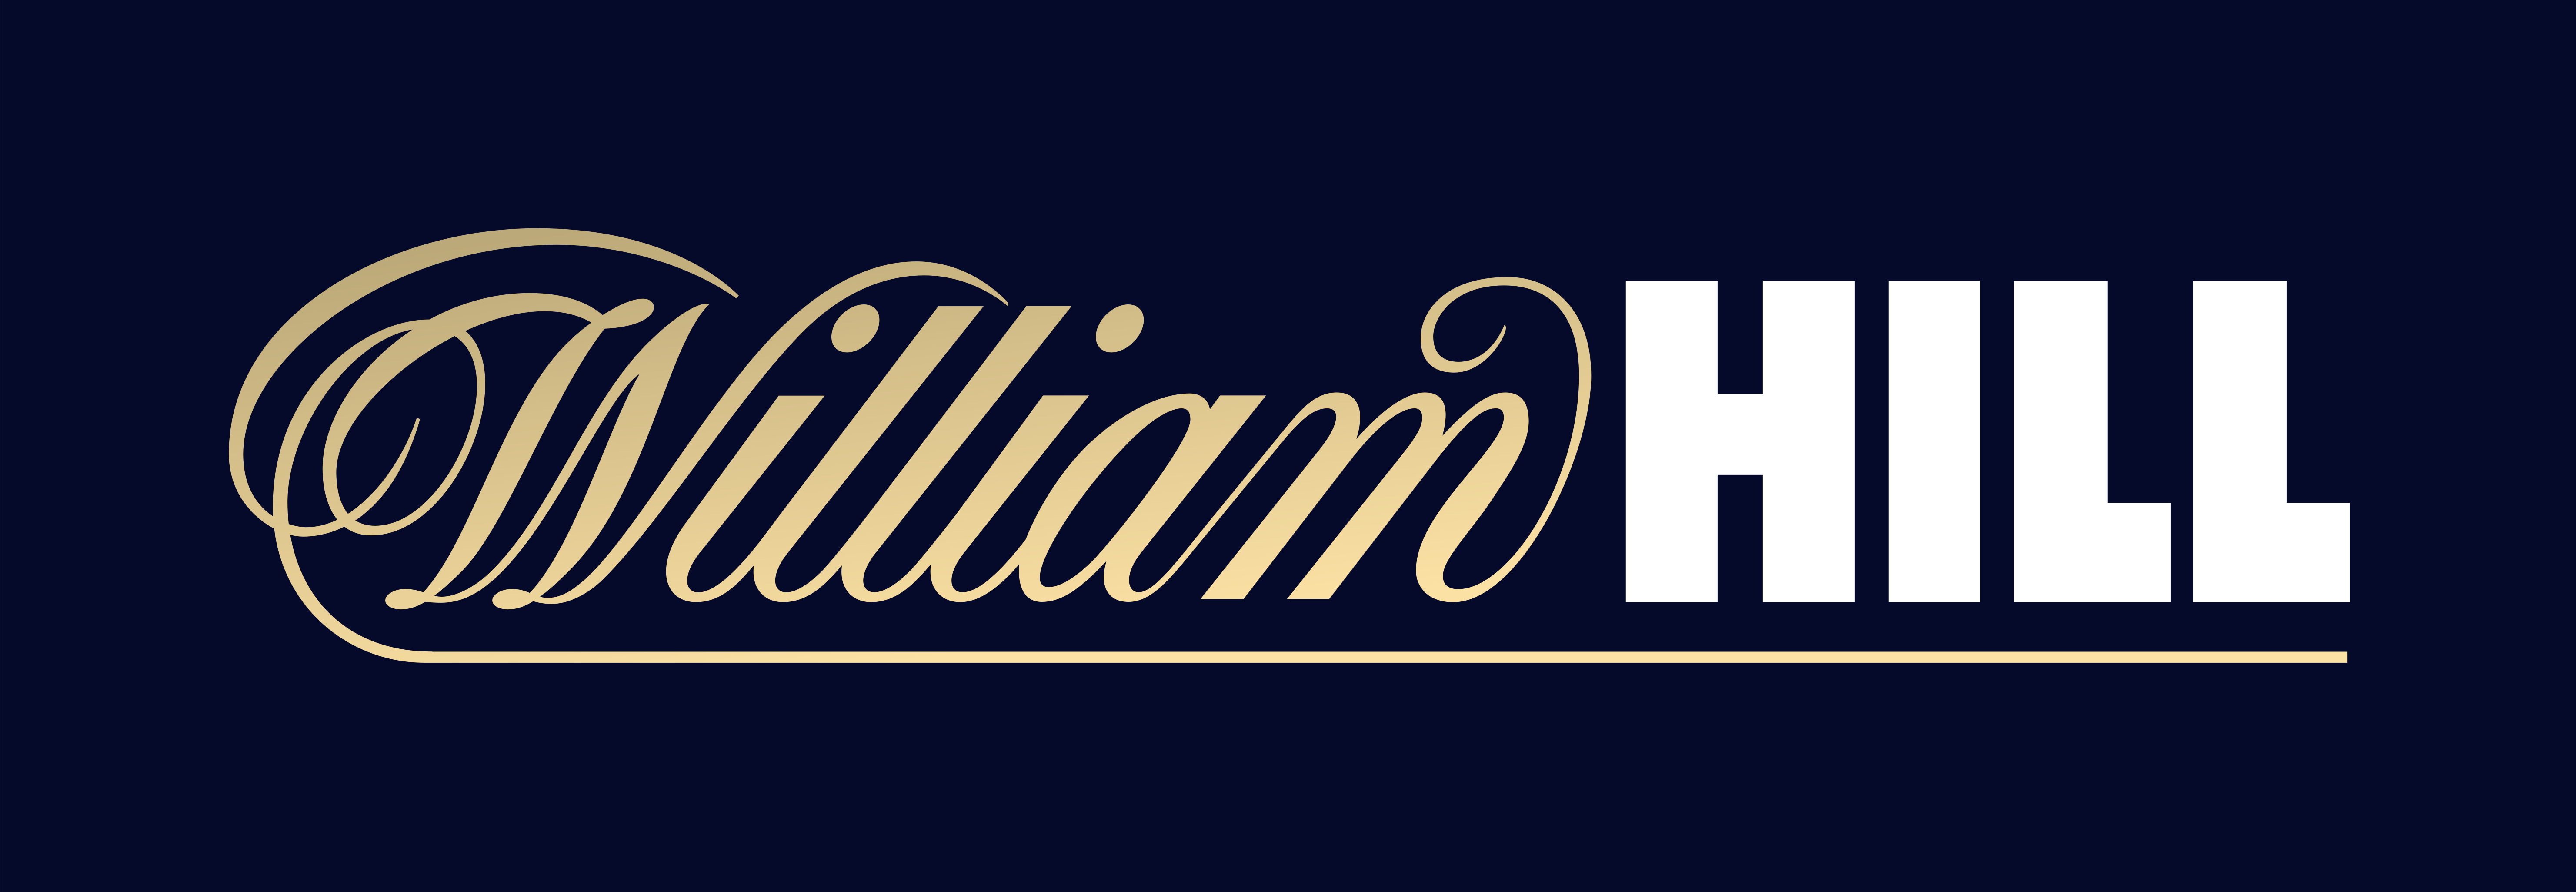 William Hill - Wikipedia